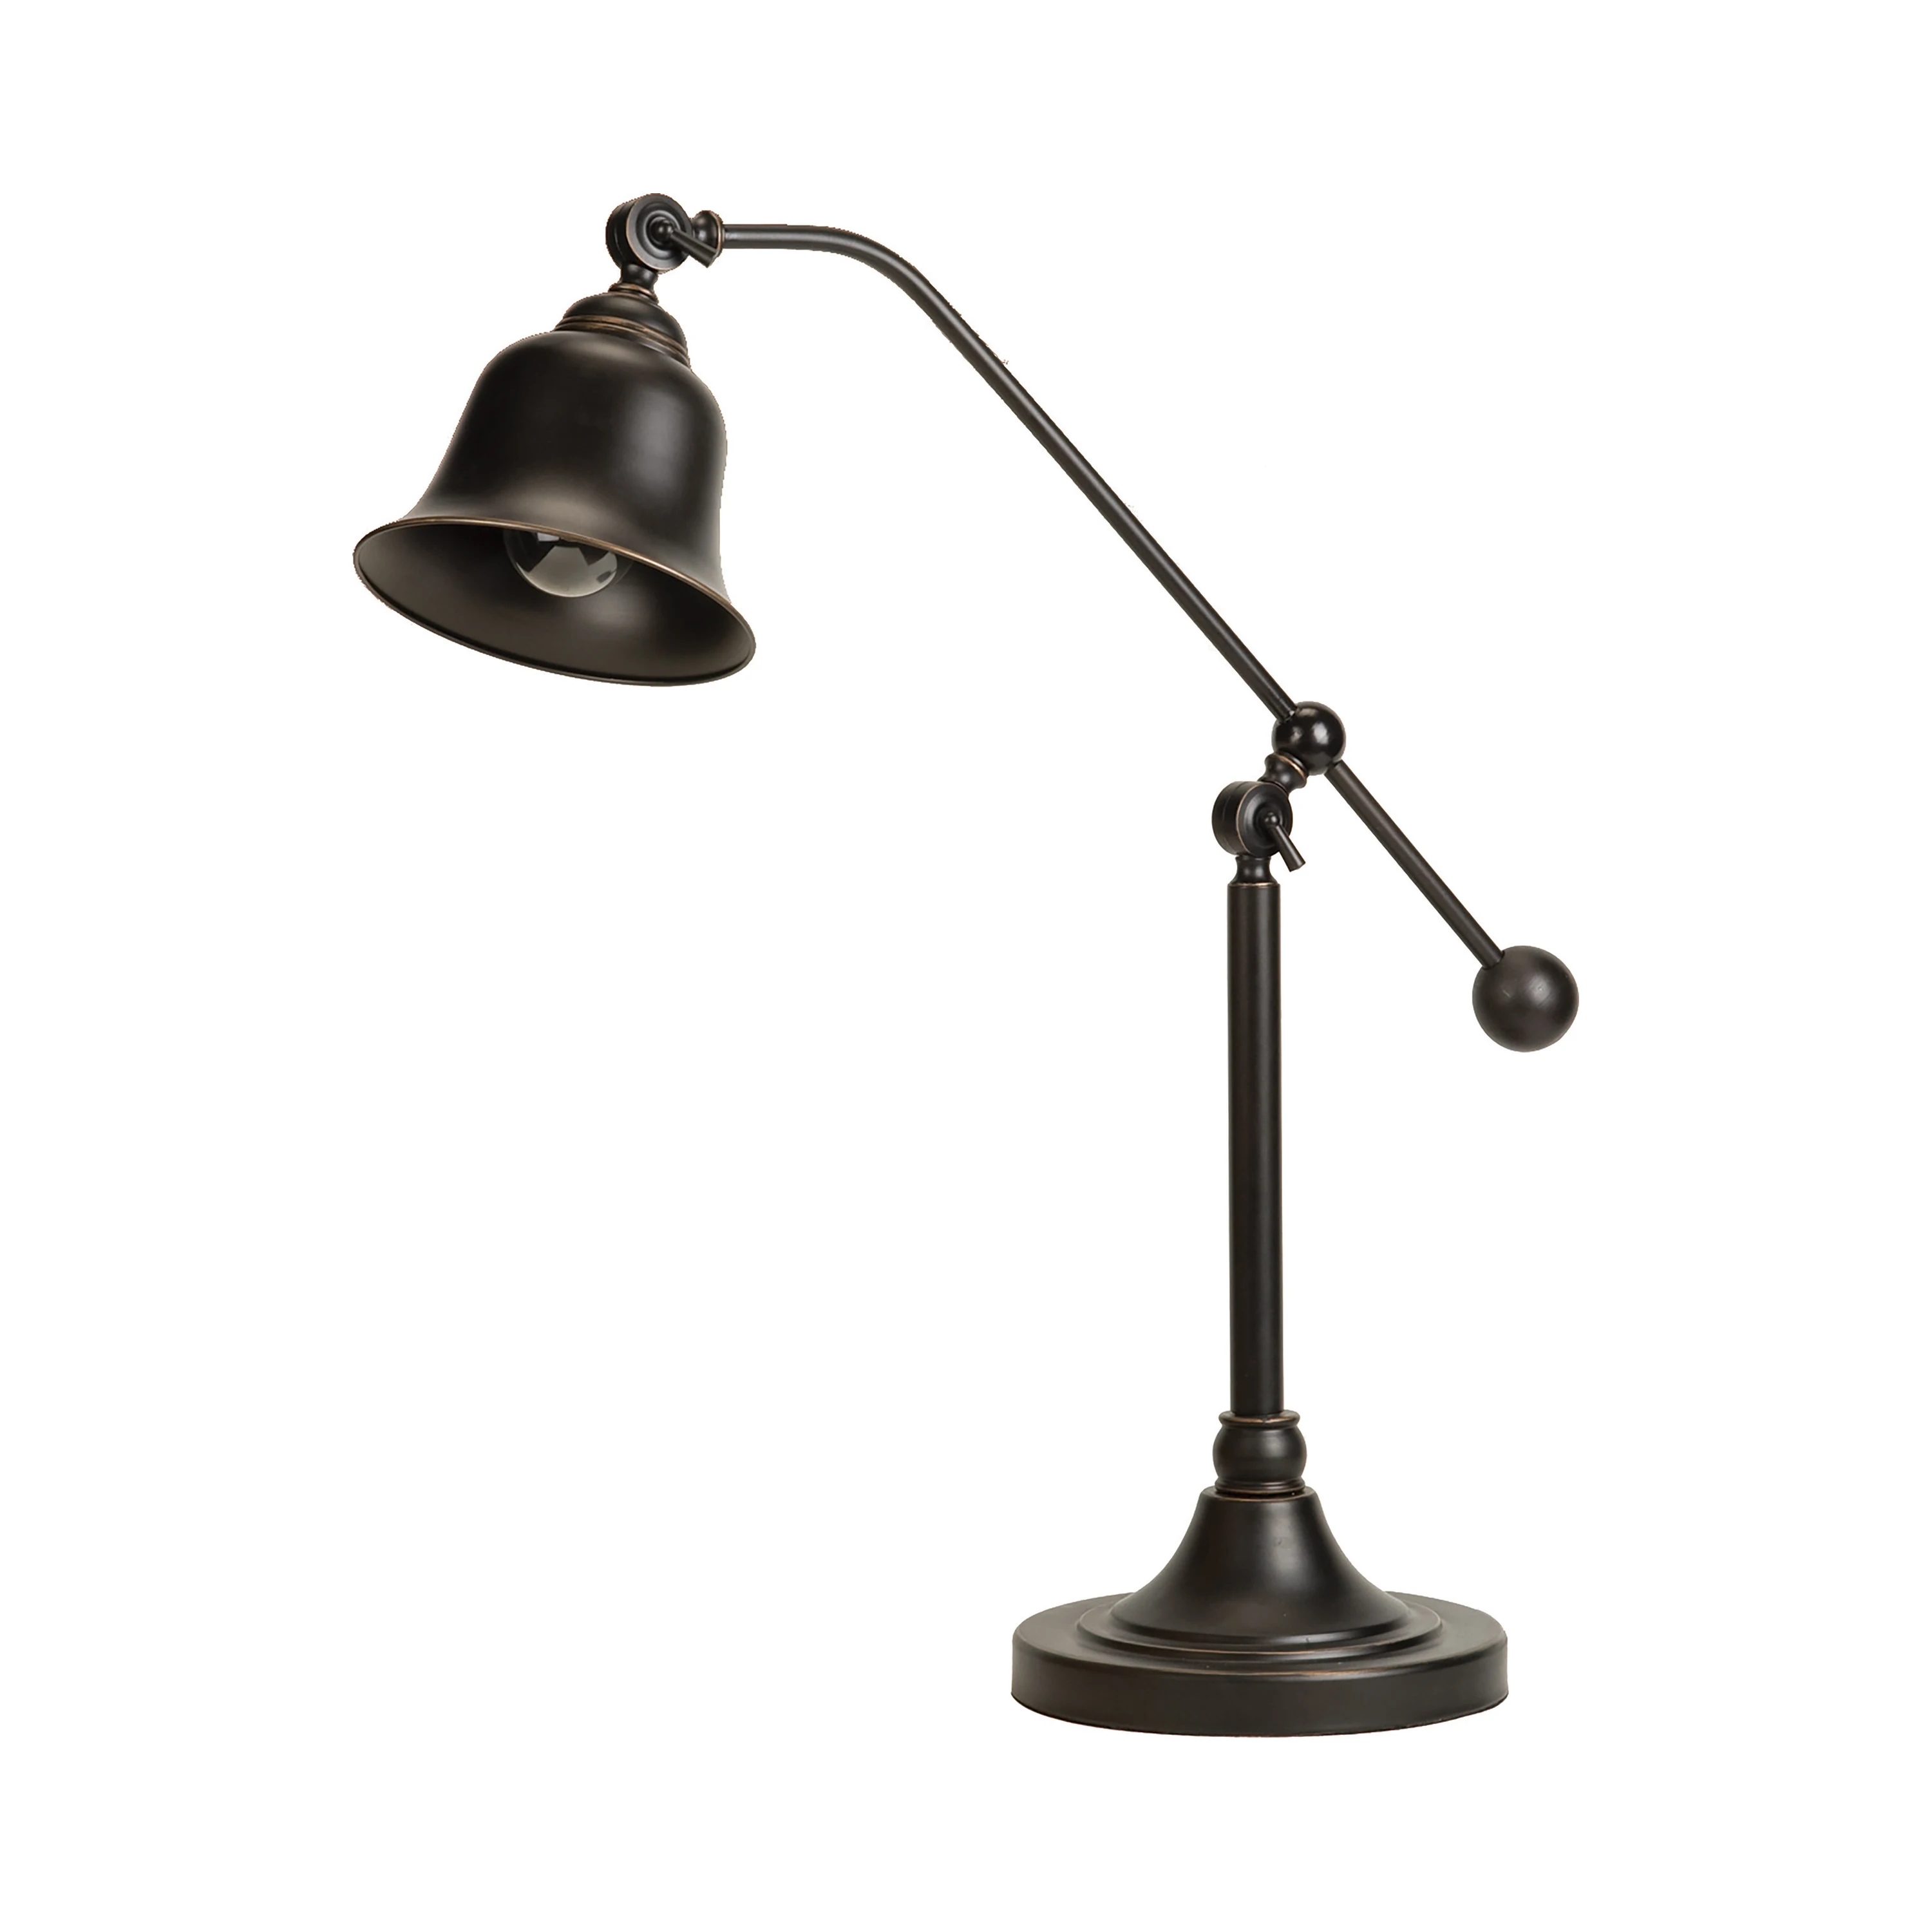 

Настольная лампа с колокольчиком HMTX, темная бронза